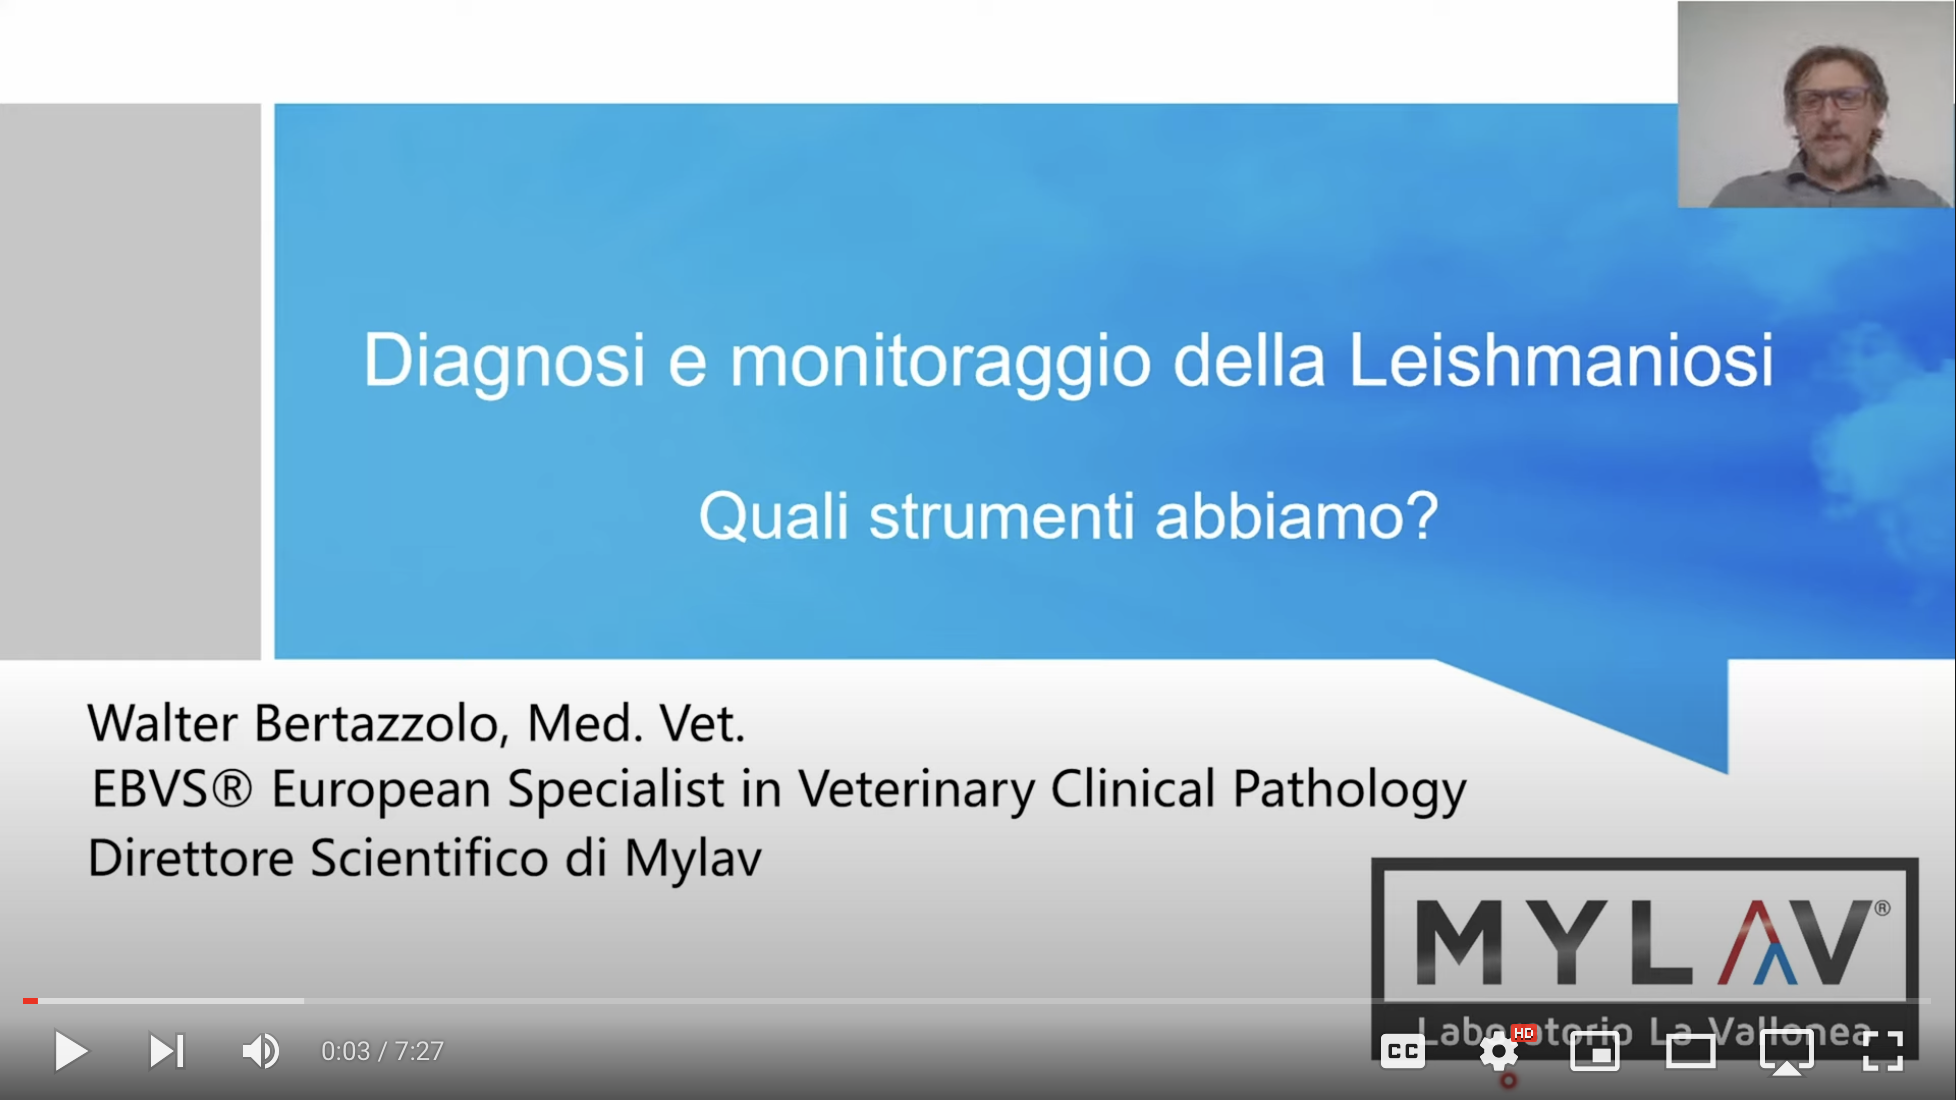 Che strumenti abbiamo per la diagnosi ed il monitoraggio della leishmaniosi?